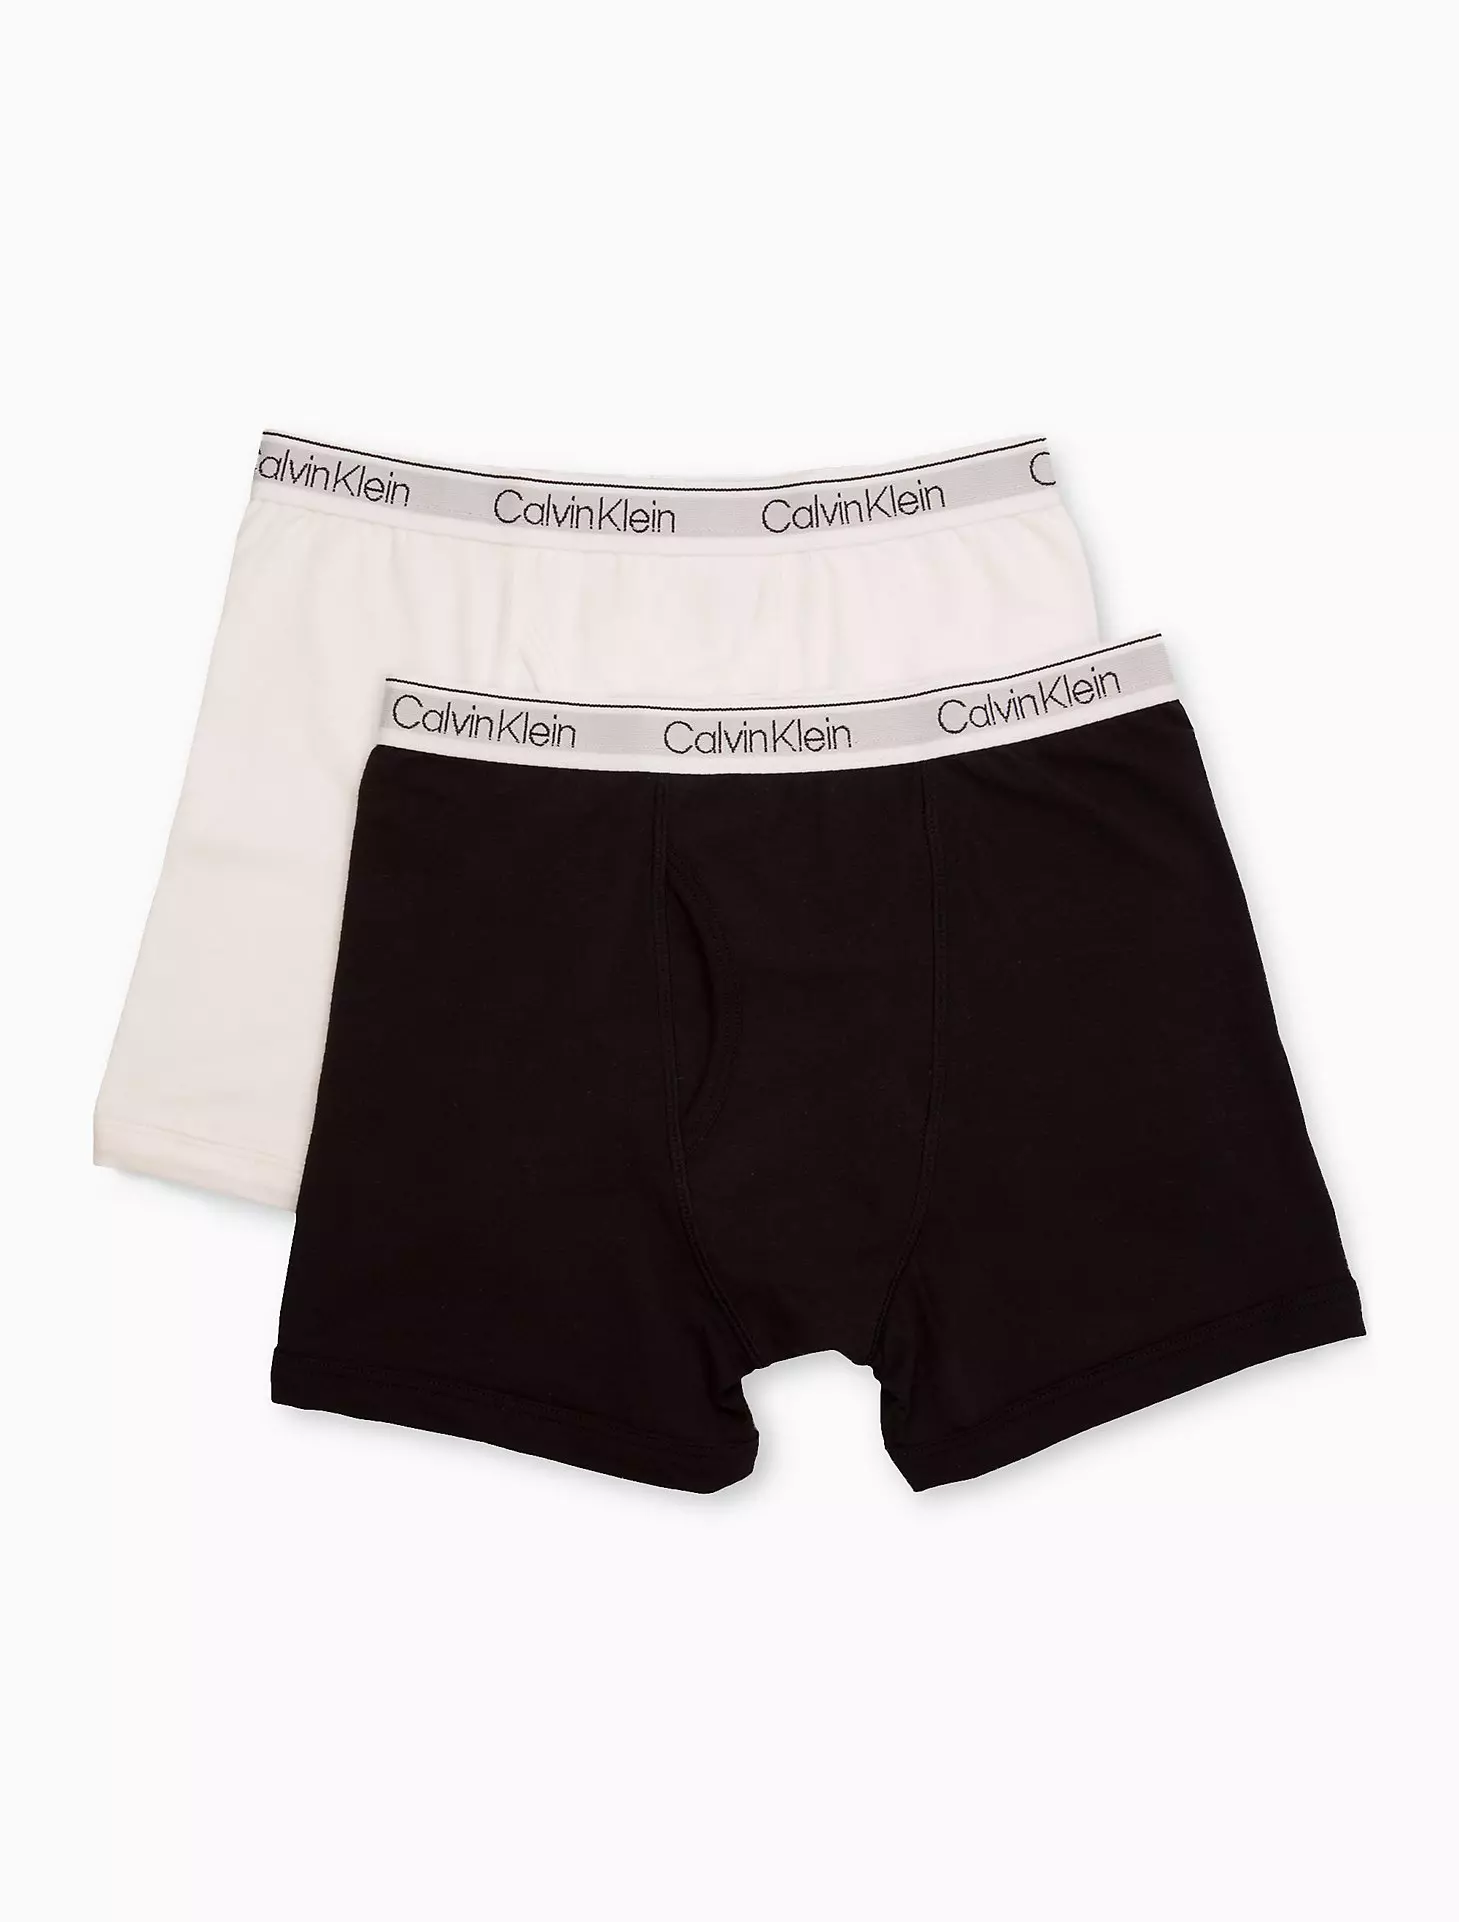 Calvin Klein Boys’ Performance Boxer Brief Underwear